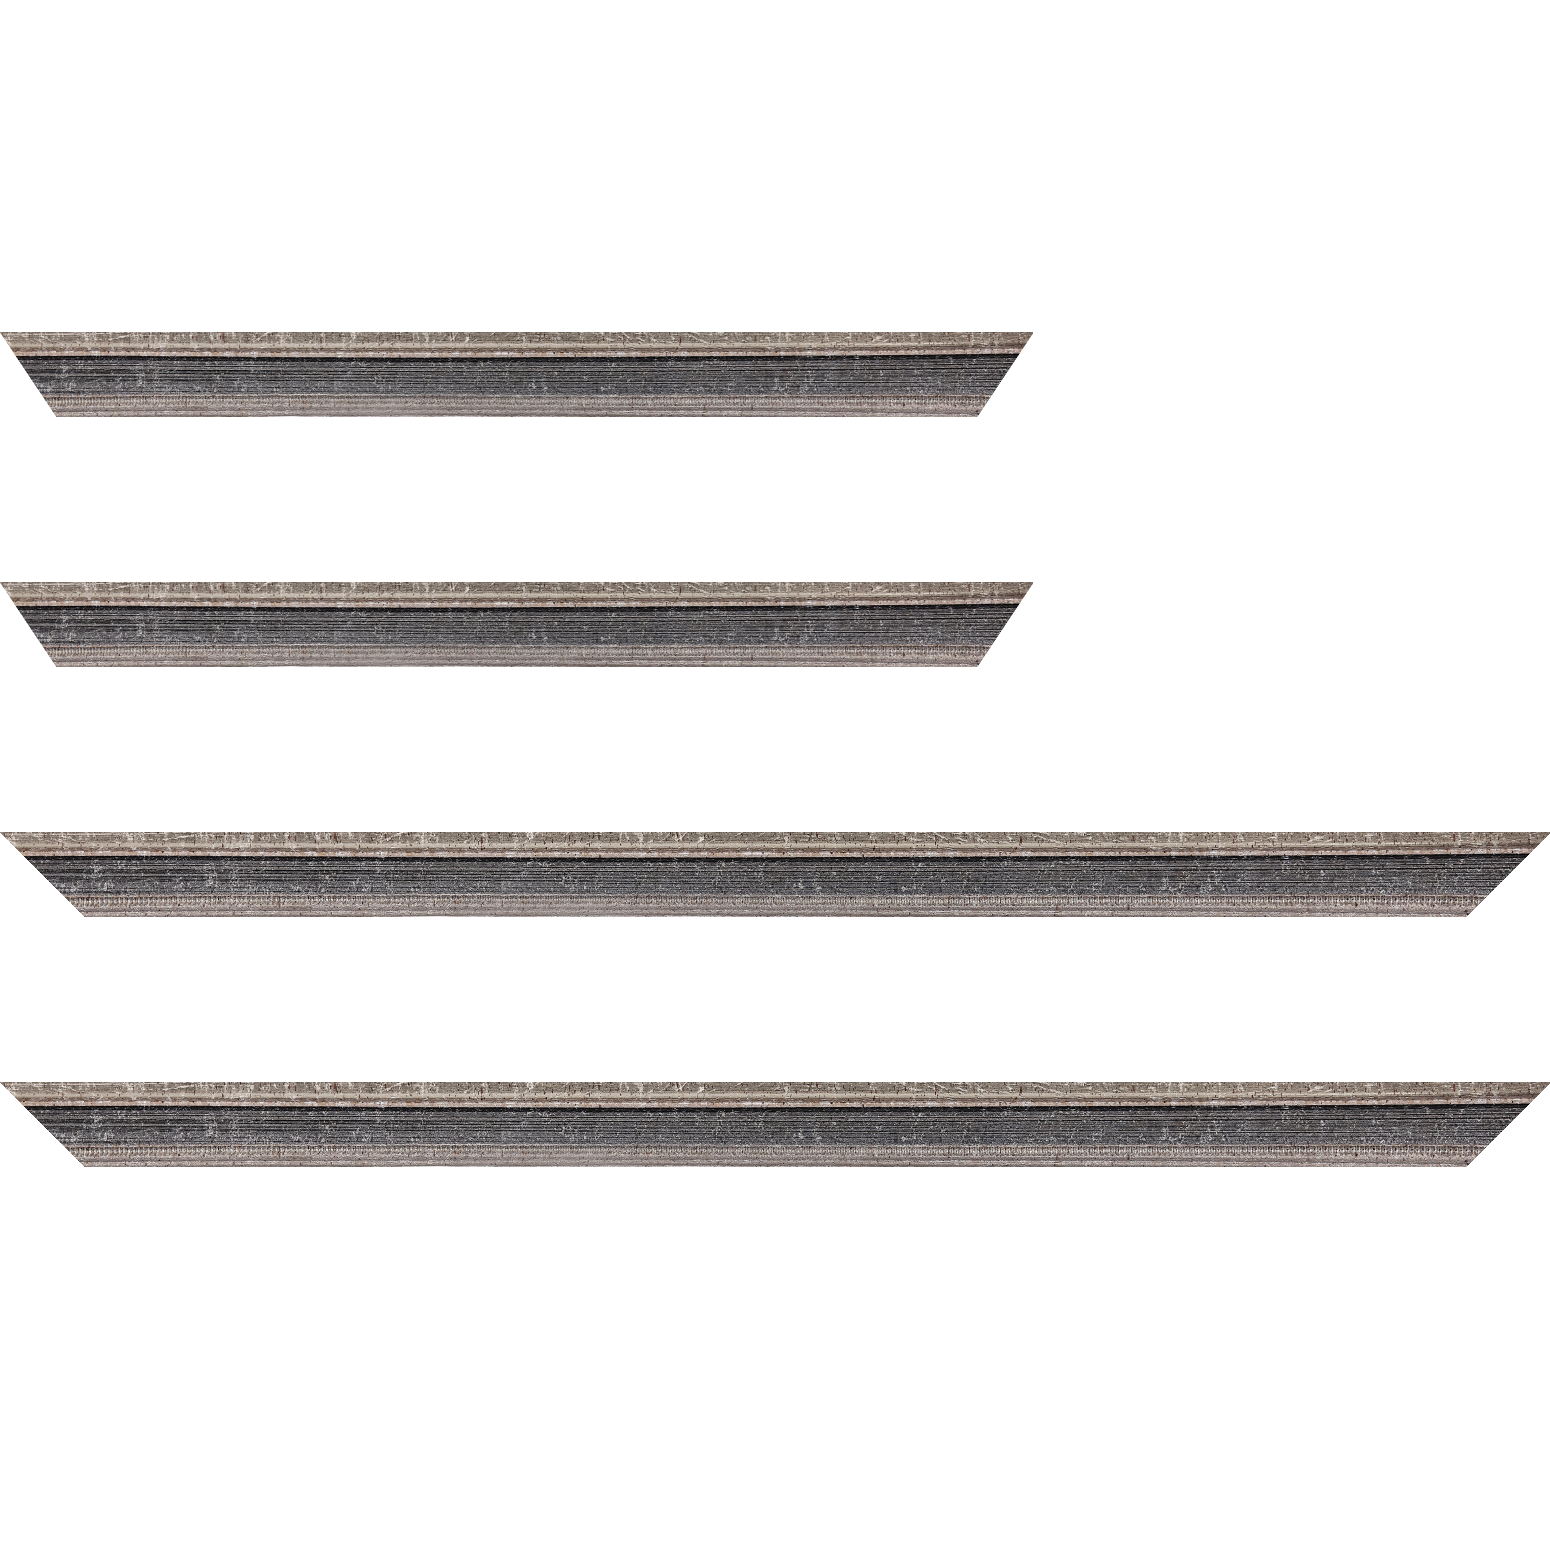 Baguette bois profil incurvé largeur 2.4cm argent antique gorge gris noirci vieilli filet perle argent - 80x80